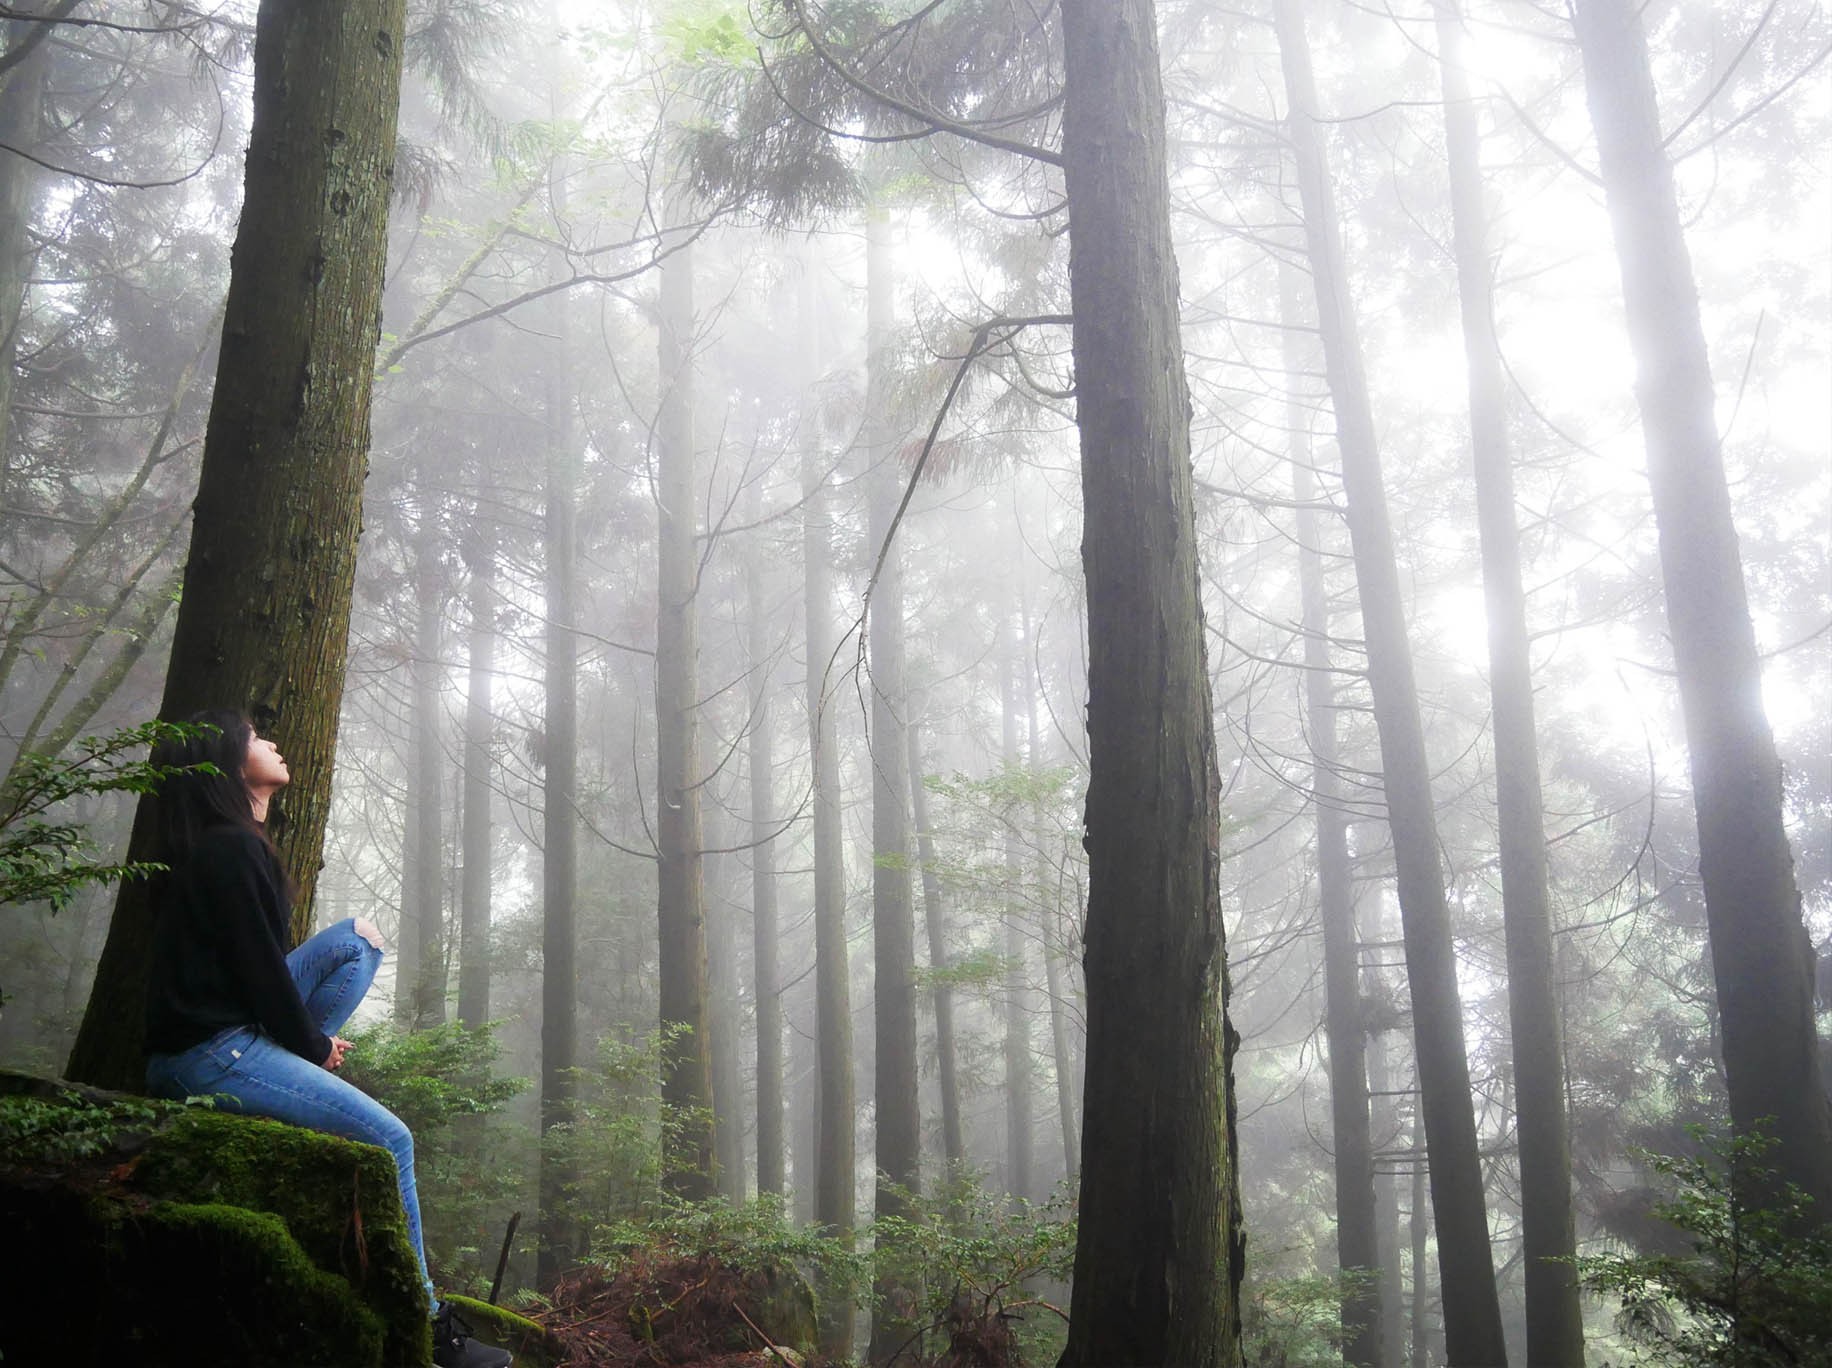 新竹雪霸国家公园健行二日游 | 找寻迷雾之森 | 保证入住观雾山庄